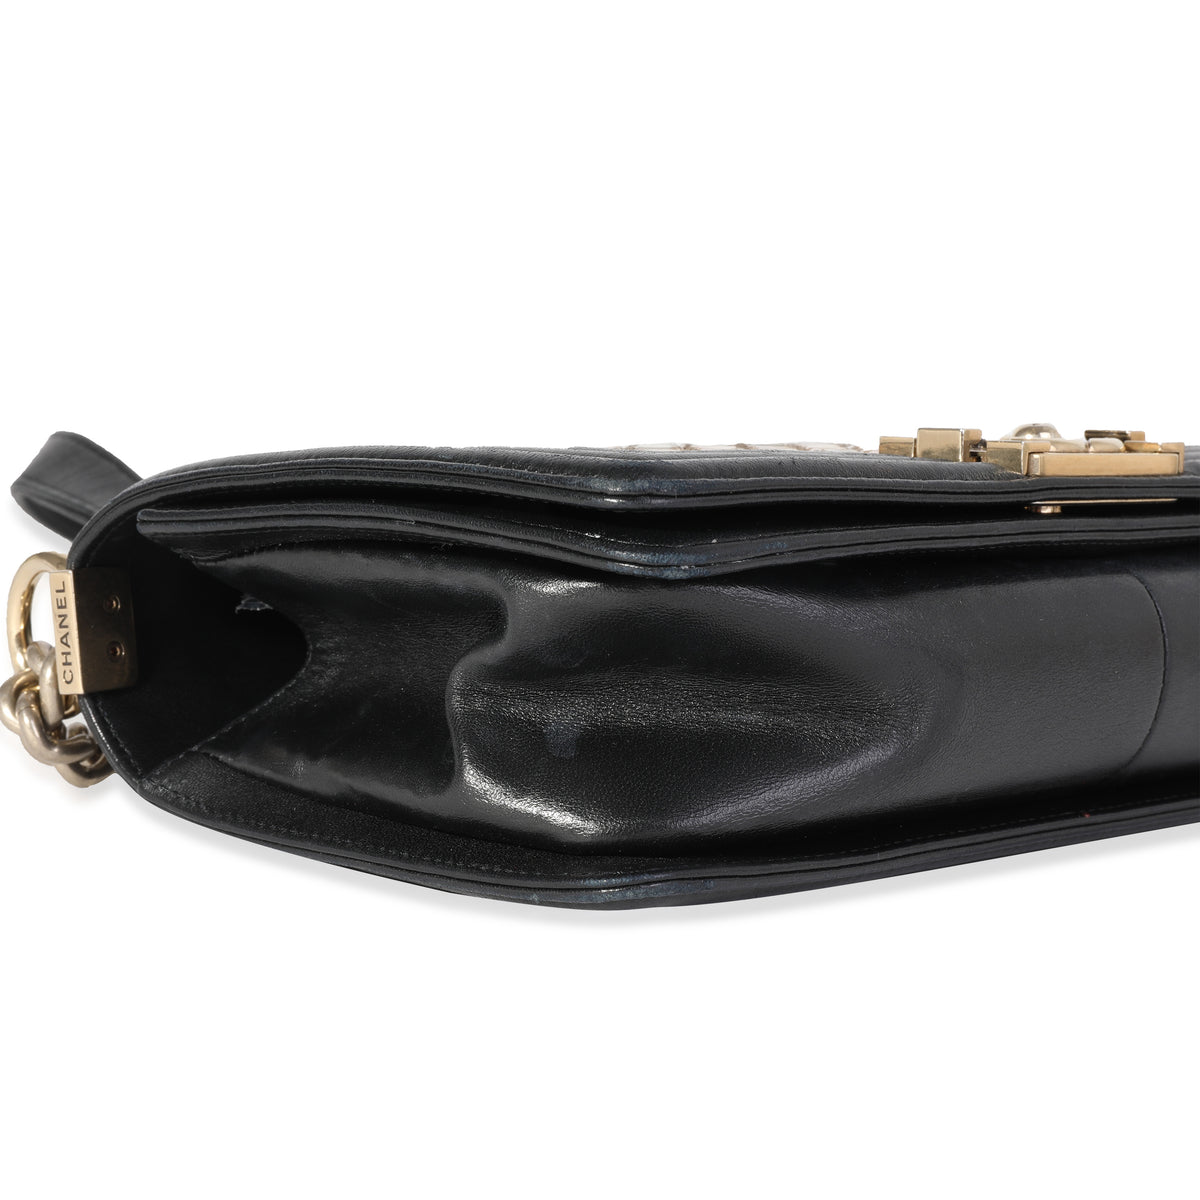 Chanel Limited Edition Black Leather & Mosaic Medium Boy Bag